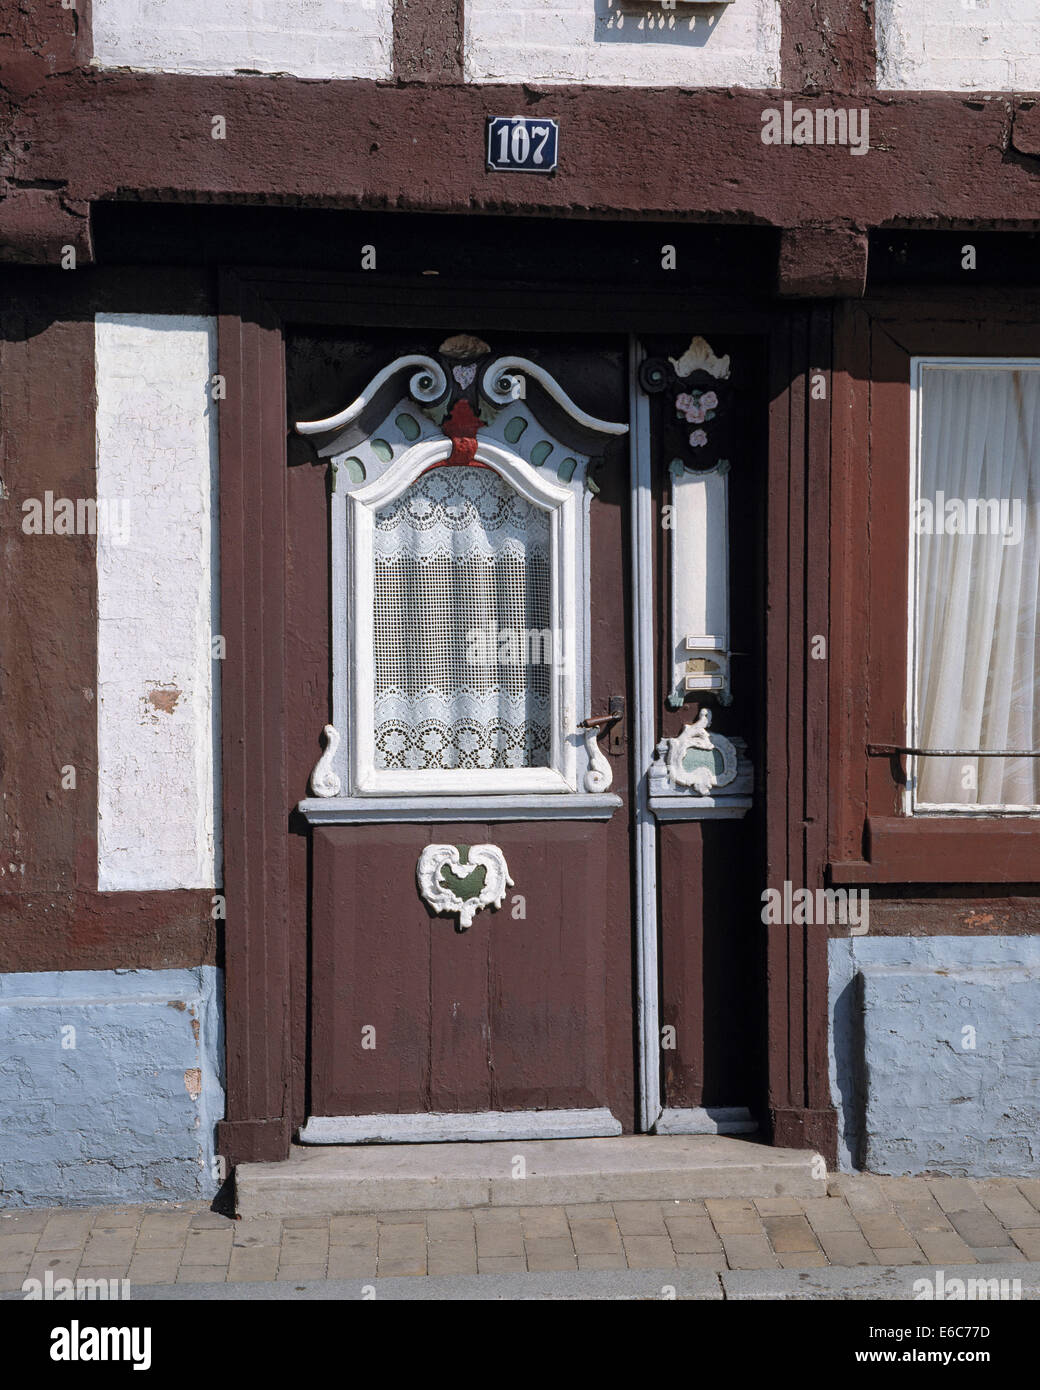 Haustuer an einem Wohnhaus in Lauenburg an der Elbe, Schleswig-Holstein Stock Photo